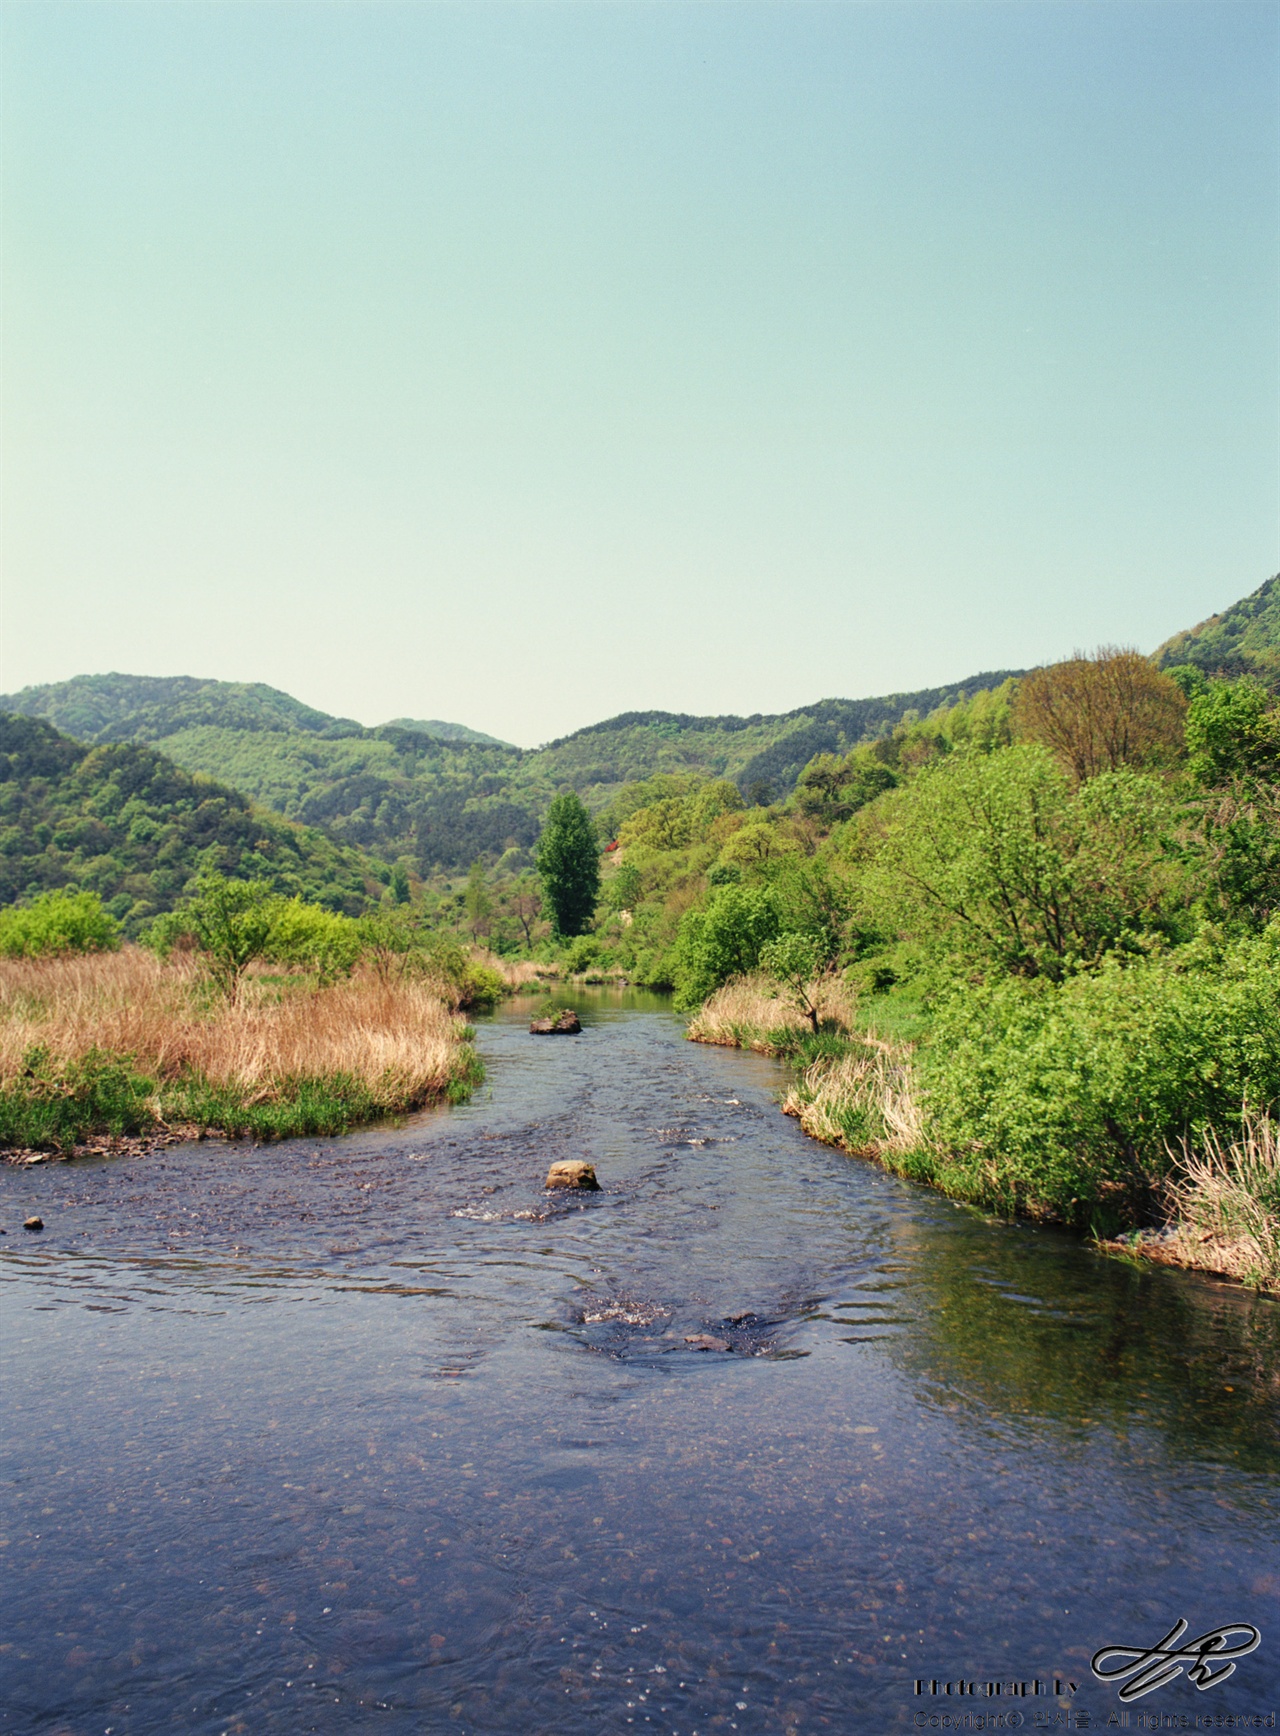 구담마을로 올라가기 직전, 강을 건너는 낮은 다리 위에서 바라본 섬진강의 모습. 위 사진에서 뒤를 돌면 보이는 풍경이다.